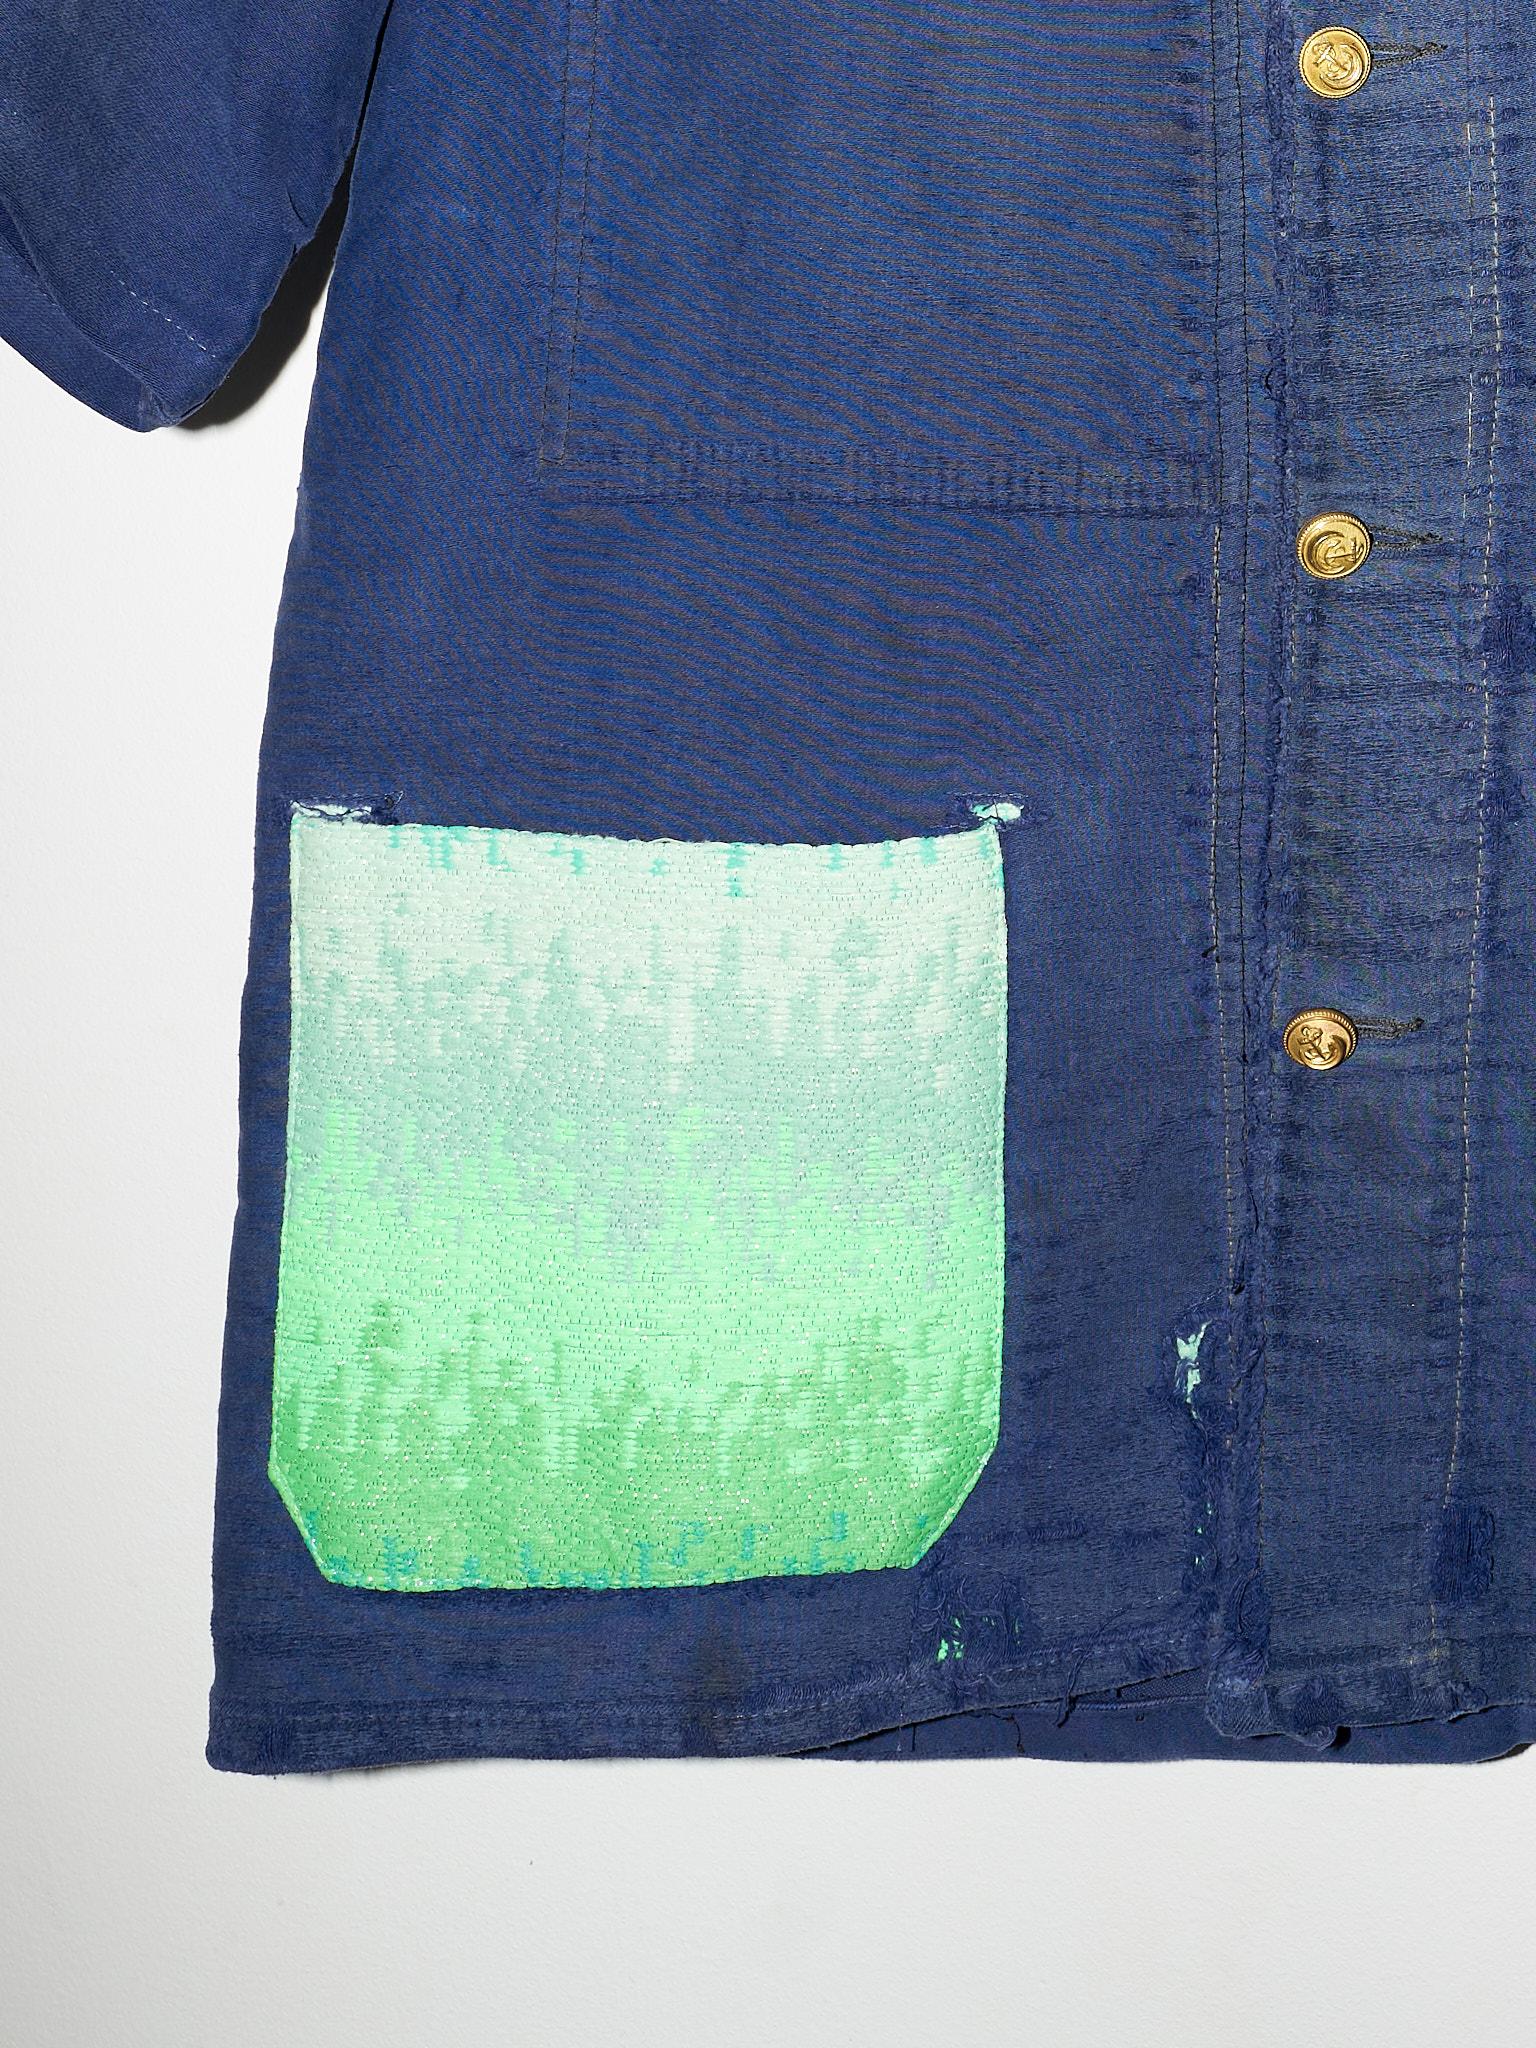 Kurzarm-Jacke aus blau-grnem Ombre-Tweed, franzsische Arbeit, Medium J Dauphin (Violett)